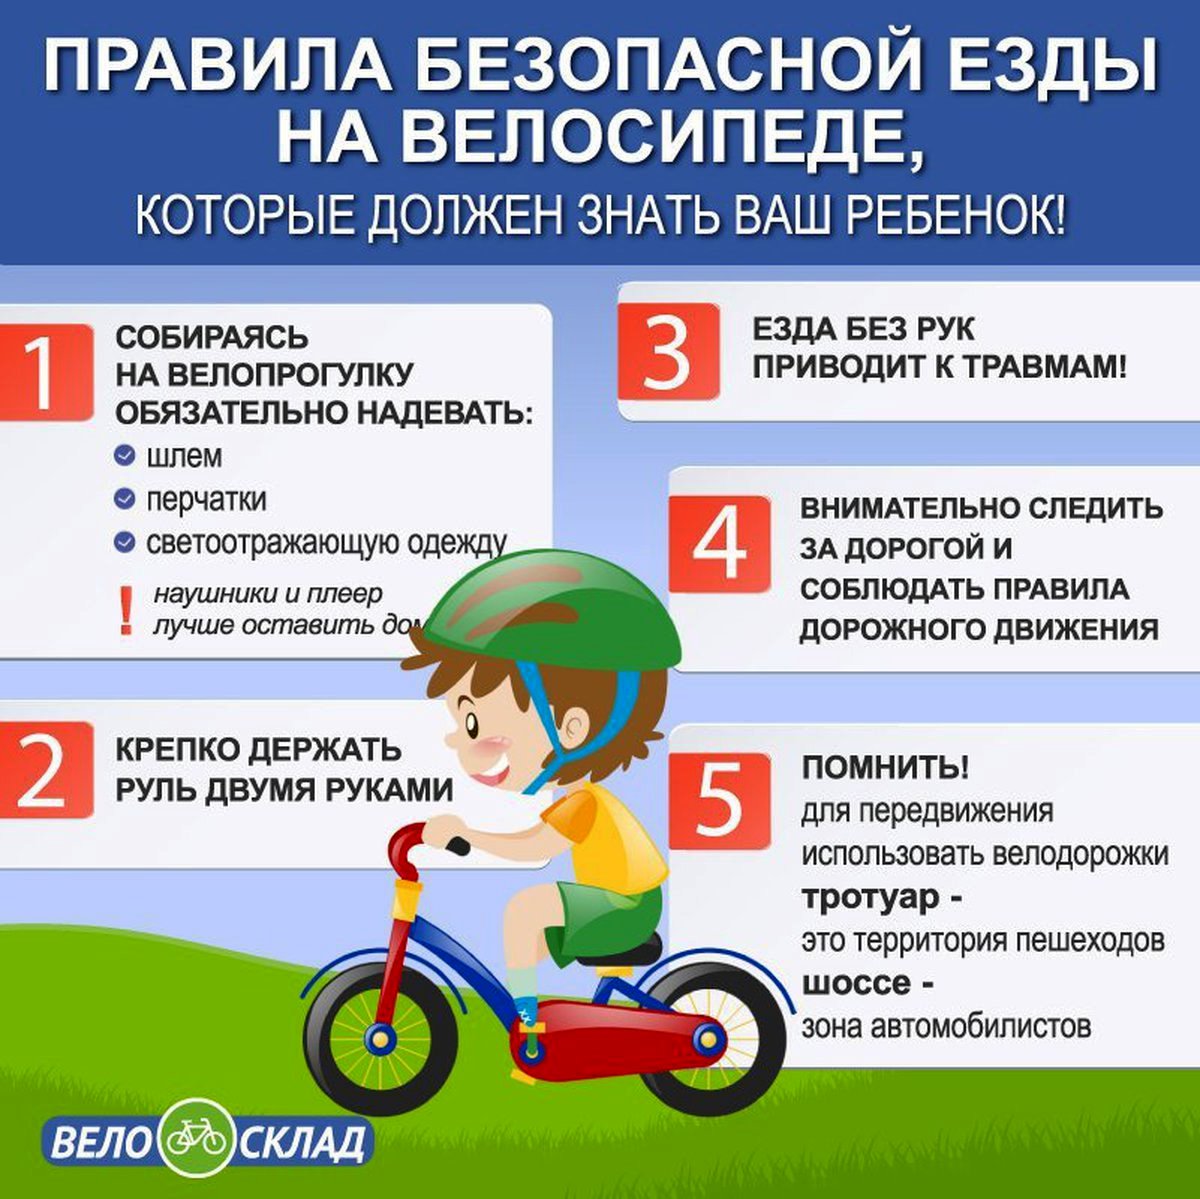 Правила безопасной езды на велосипеде.